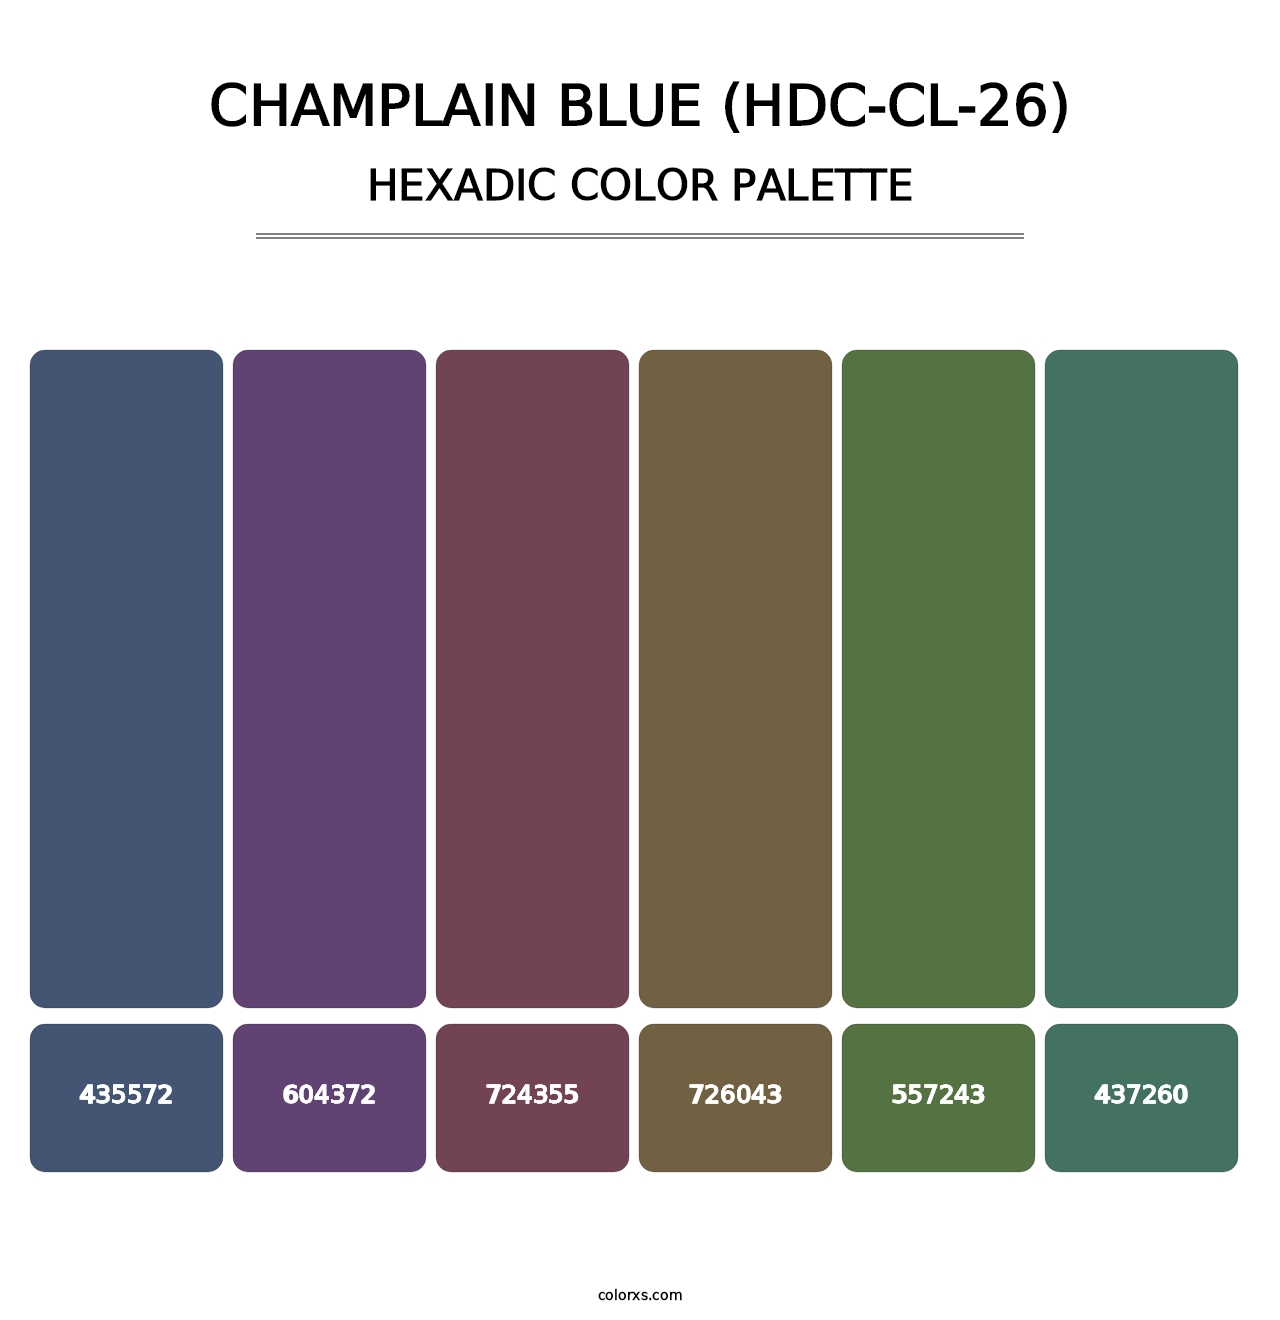 Champlain Blue (HDC-CL-26) - Hexadic Color Palette